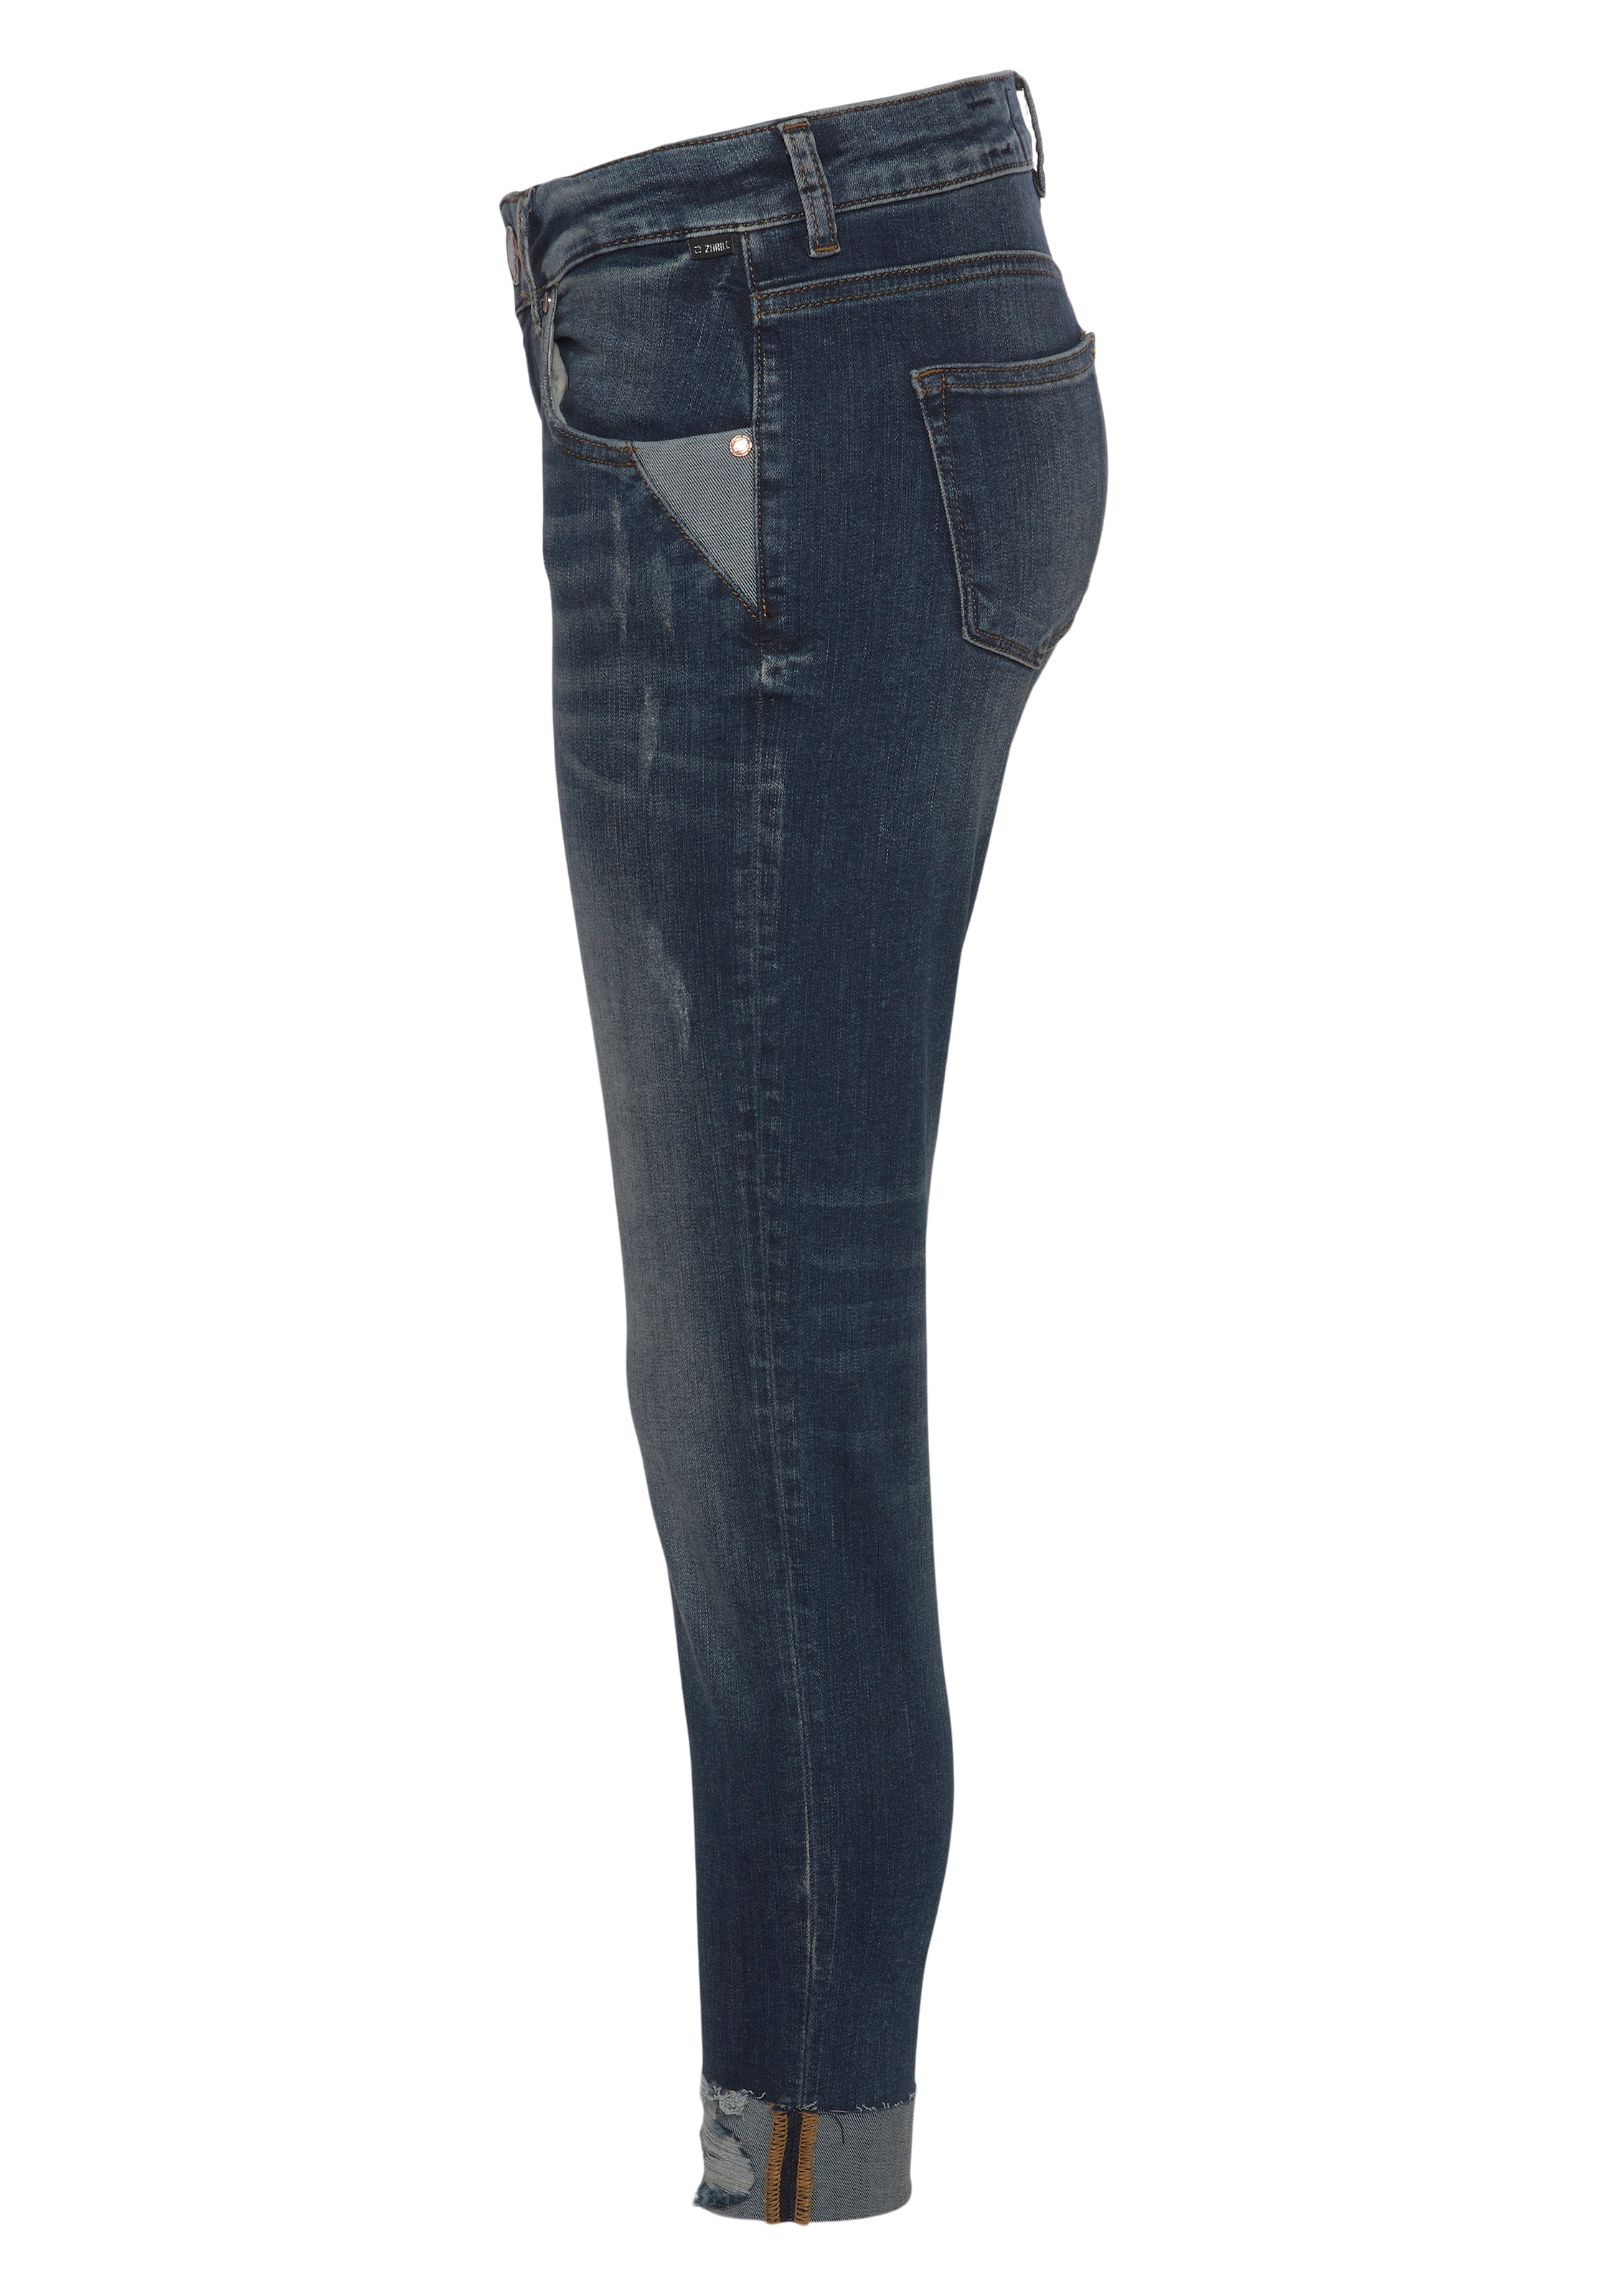 Zhrill 7/8-Jeans »NOVA«, mit Kontrast Details, zum Krempeln bequem kaufen | Stretchjeans